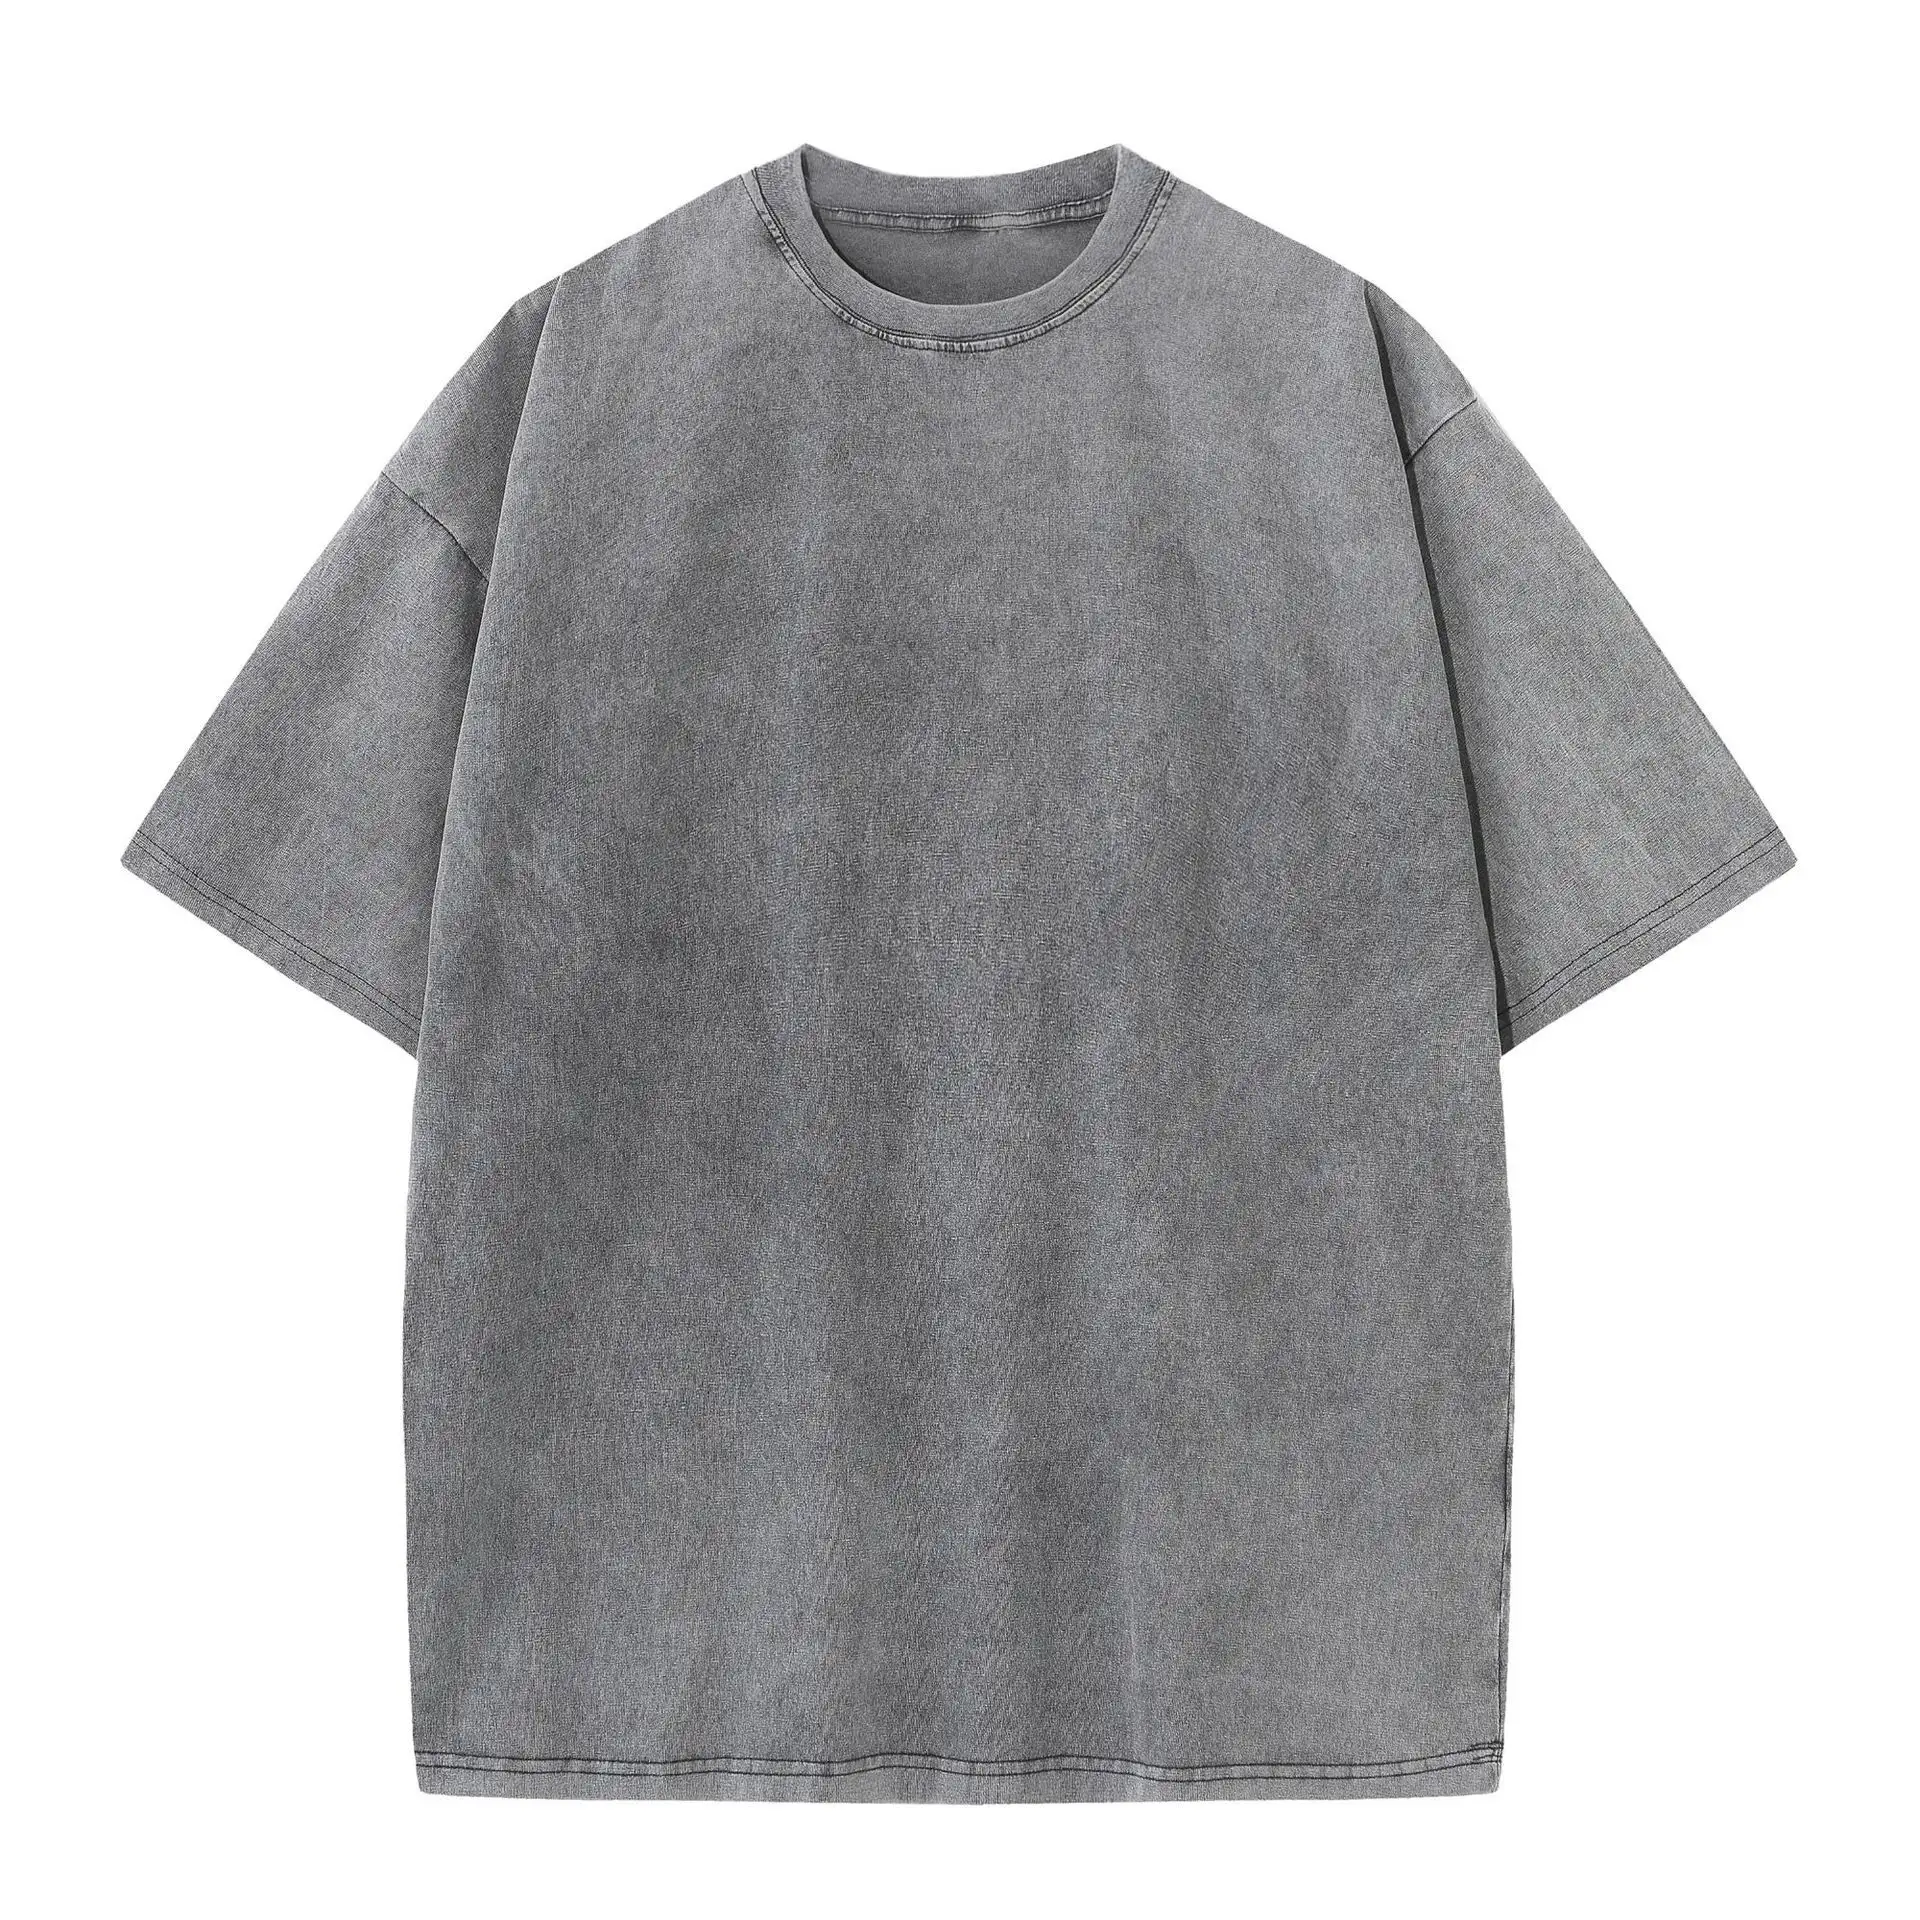 Camiseta de manga curta de algodão lavado 230gsm, camiseta unissex vintage solta, camiseta de lavagem com ácido, camiseta grande